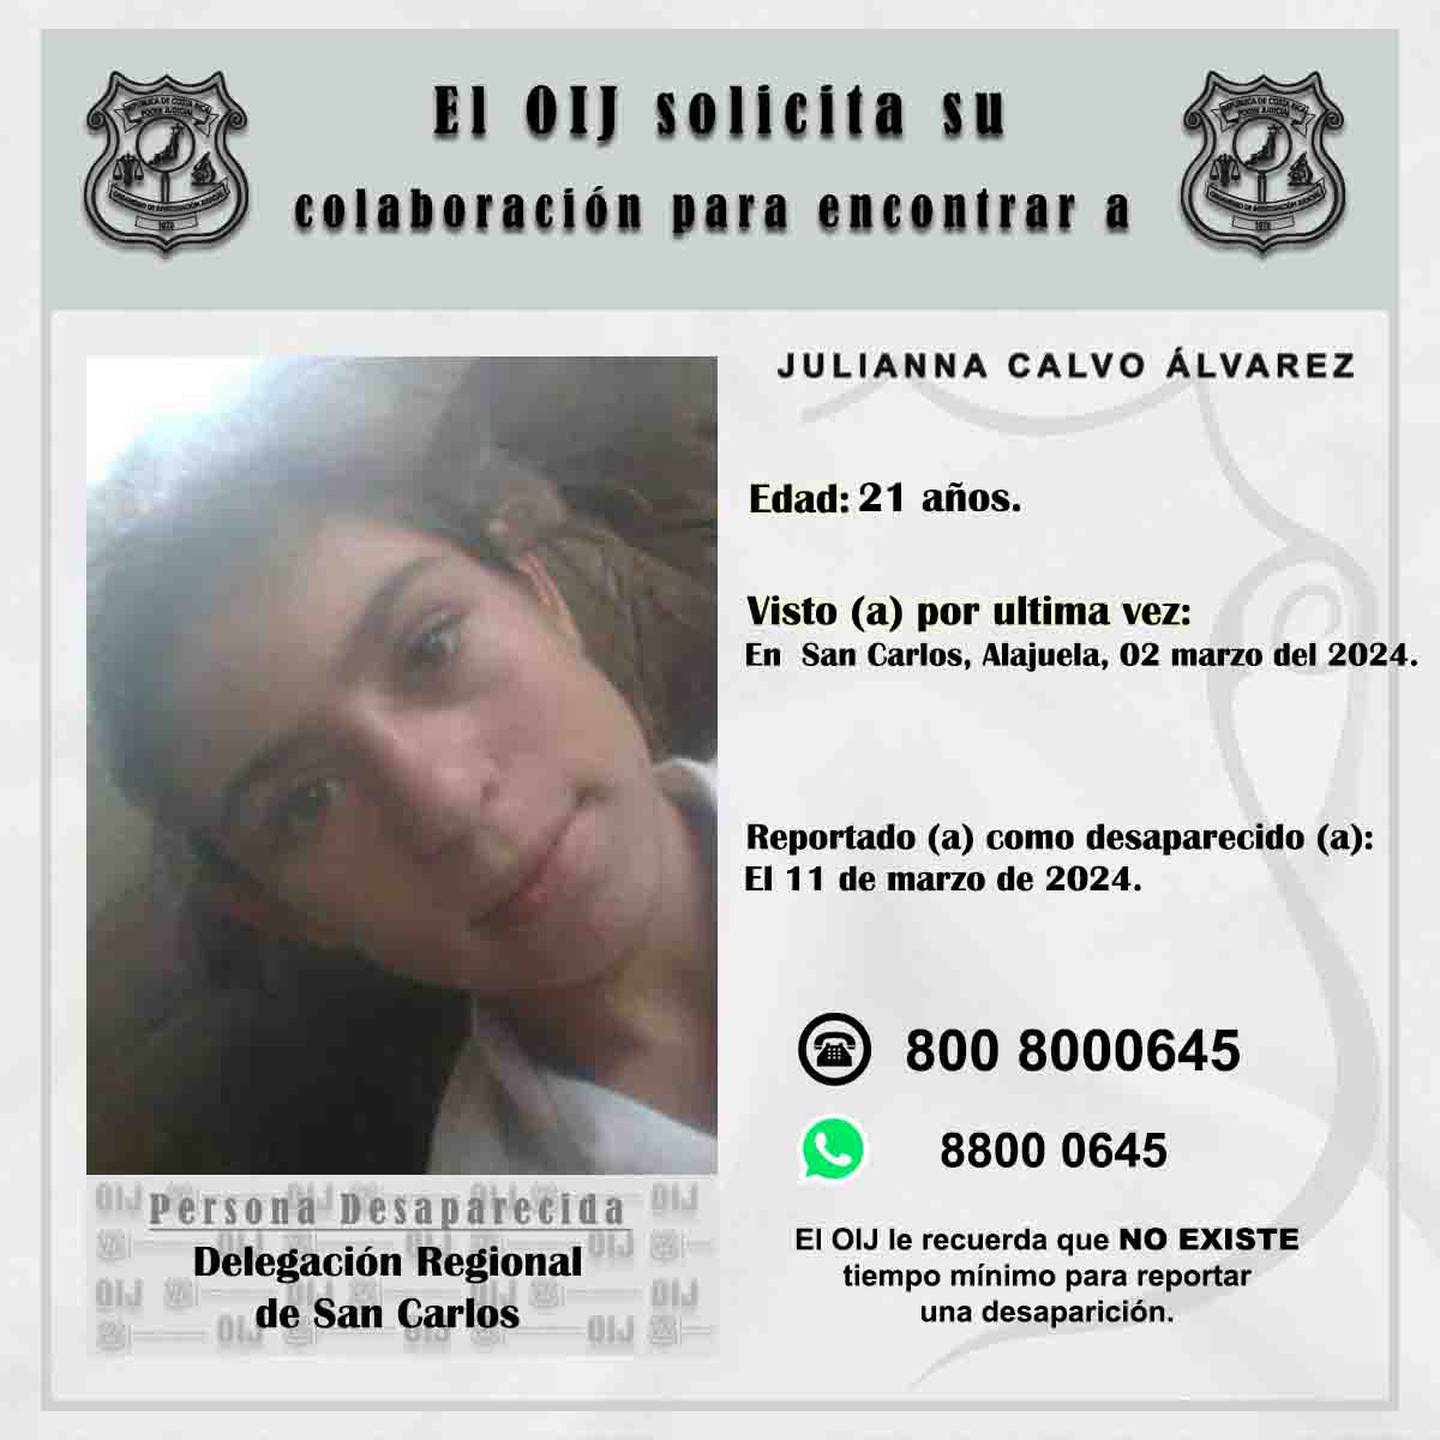 Julianna Calvo Álvarez, de 21años desaparecida en Pital de San Carlos, Alajuela desde el2 de marzo del 2024. Foto: OIJ
La Teja